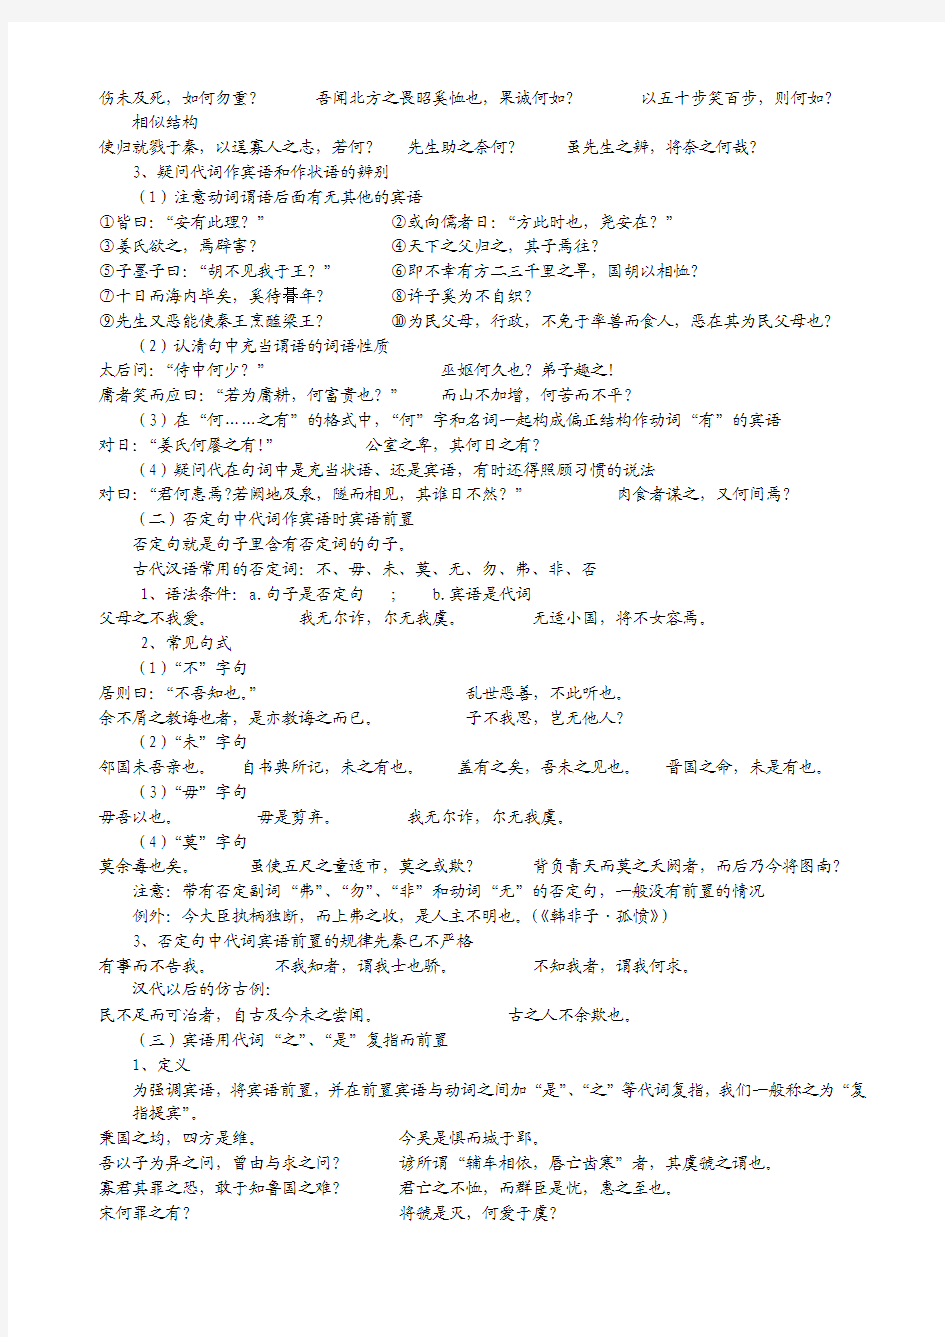 古代汉语复习笔记 重点全记录